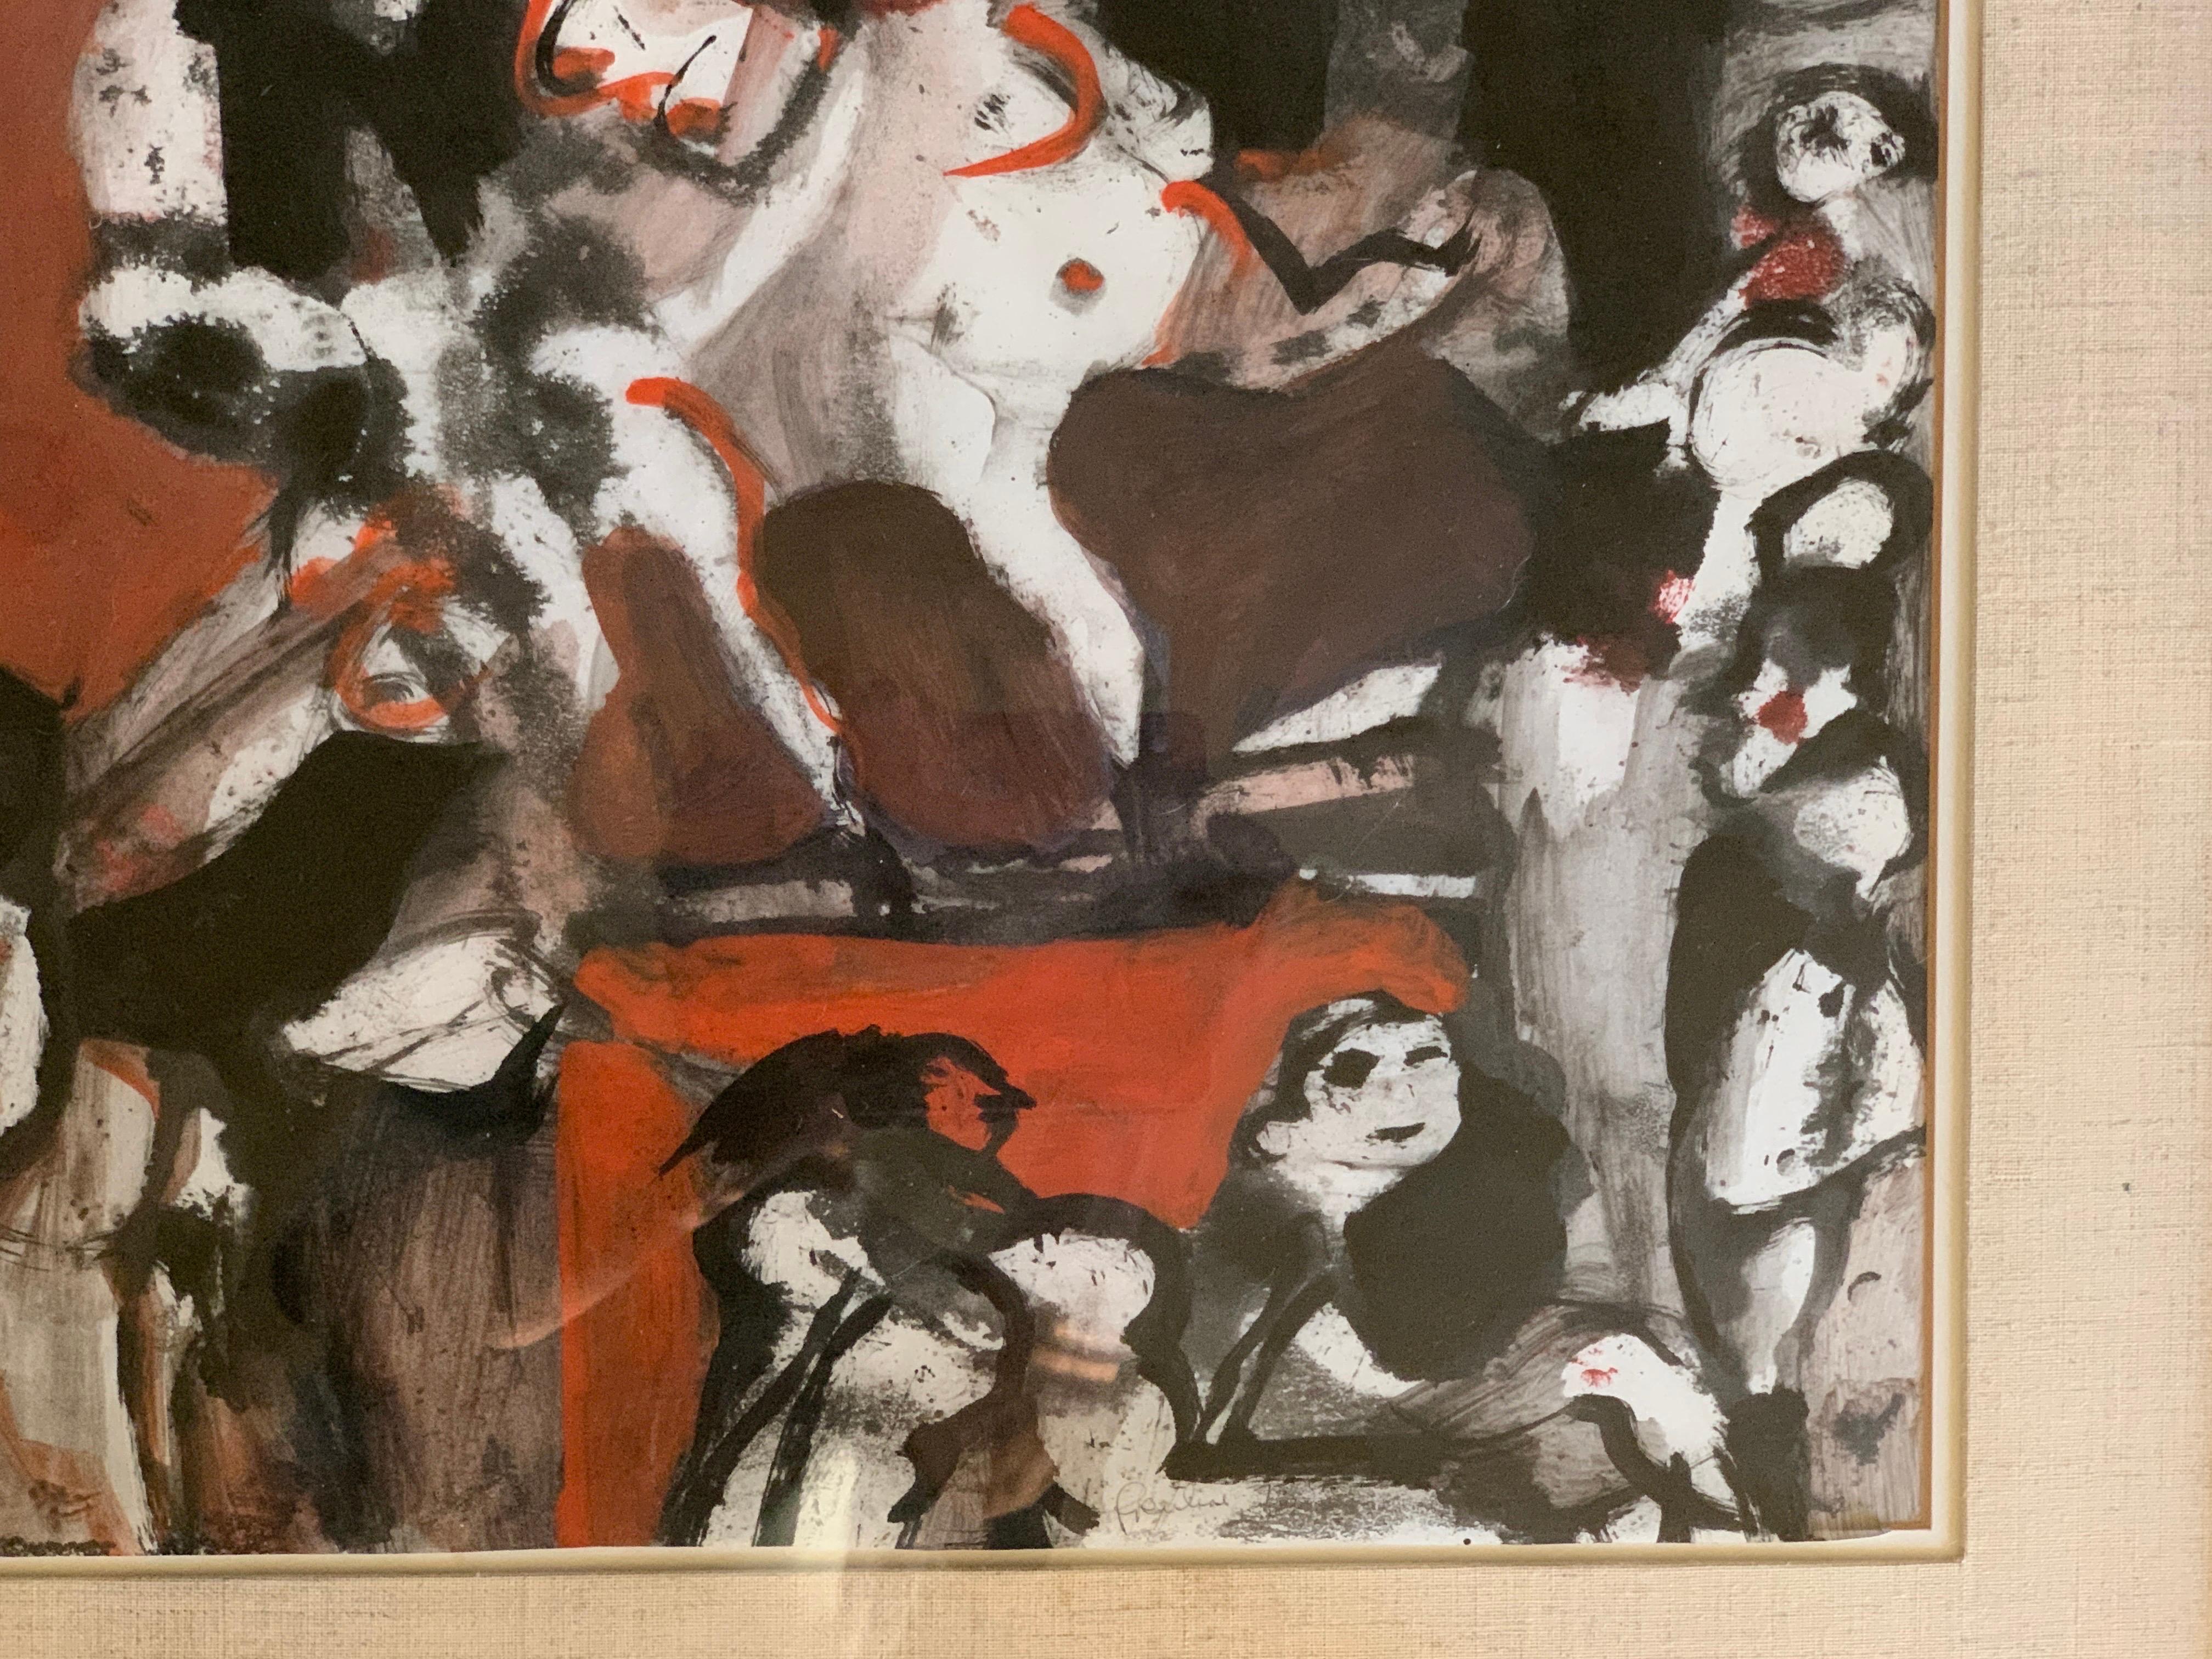 C'est une rare et belle peinture de Stanislaw Frenkiel. Cette peinture a été exposée à la Tamara Pfeiffer Gallery à Bruxelles, en Belgique. C'était la galerie la plus prestigieuse en 1973. Intitulé 